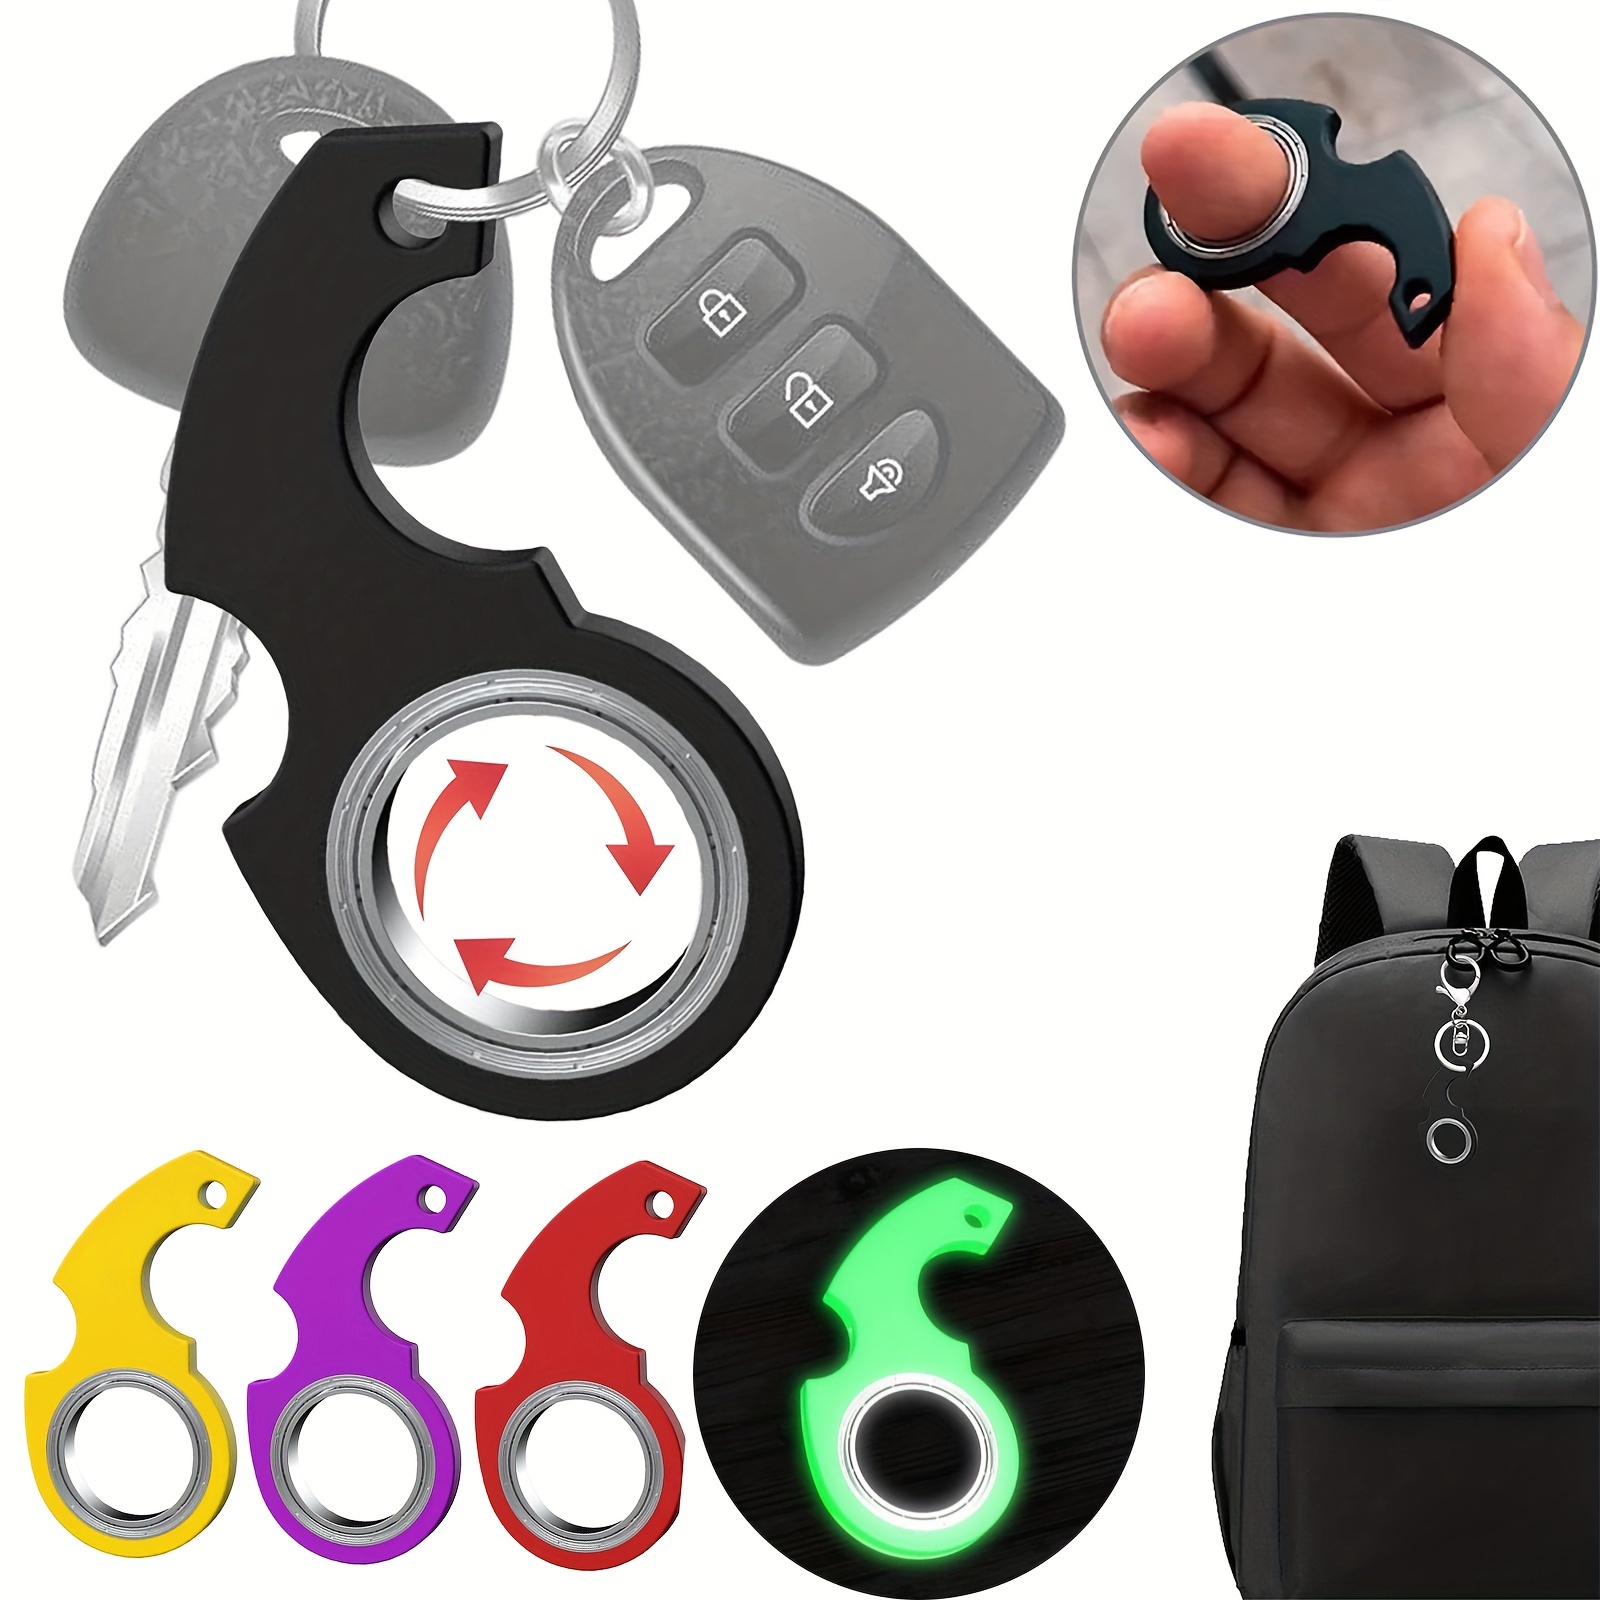 RED Fidget Keychain Spinner  Key Chain, Key Ring, Key Holder